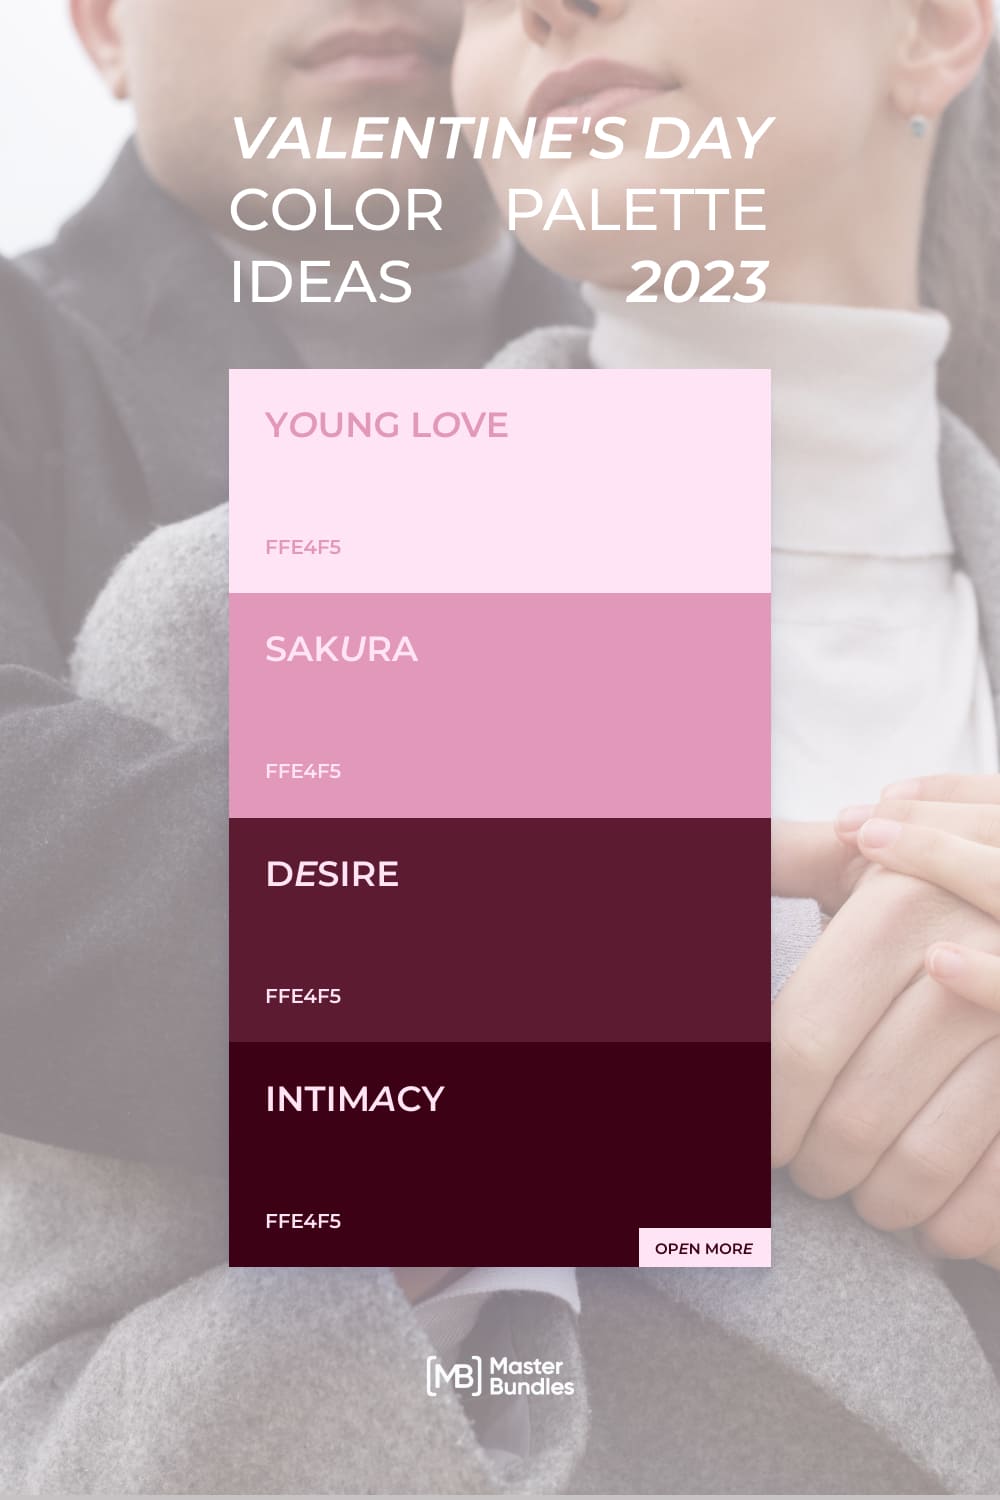 pinterest 10 valentine s day color palette ideas 2023 894